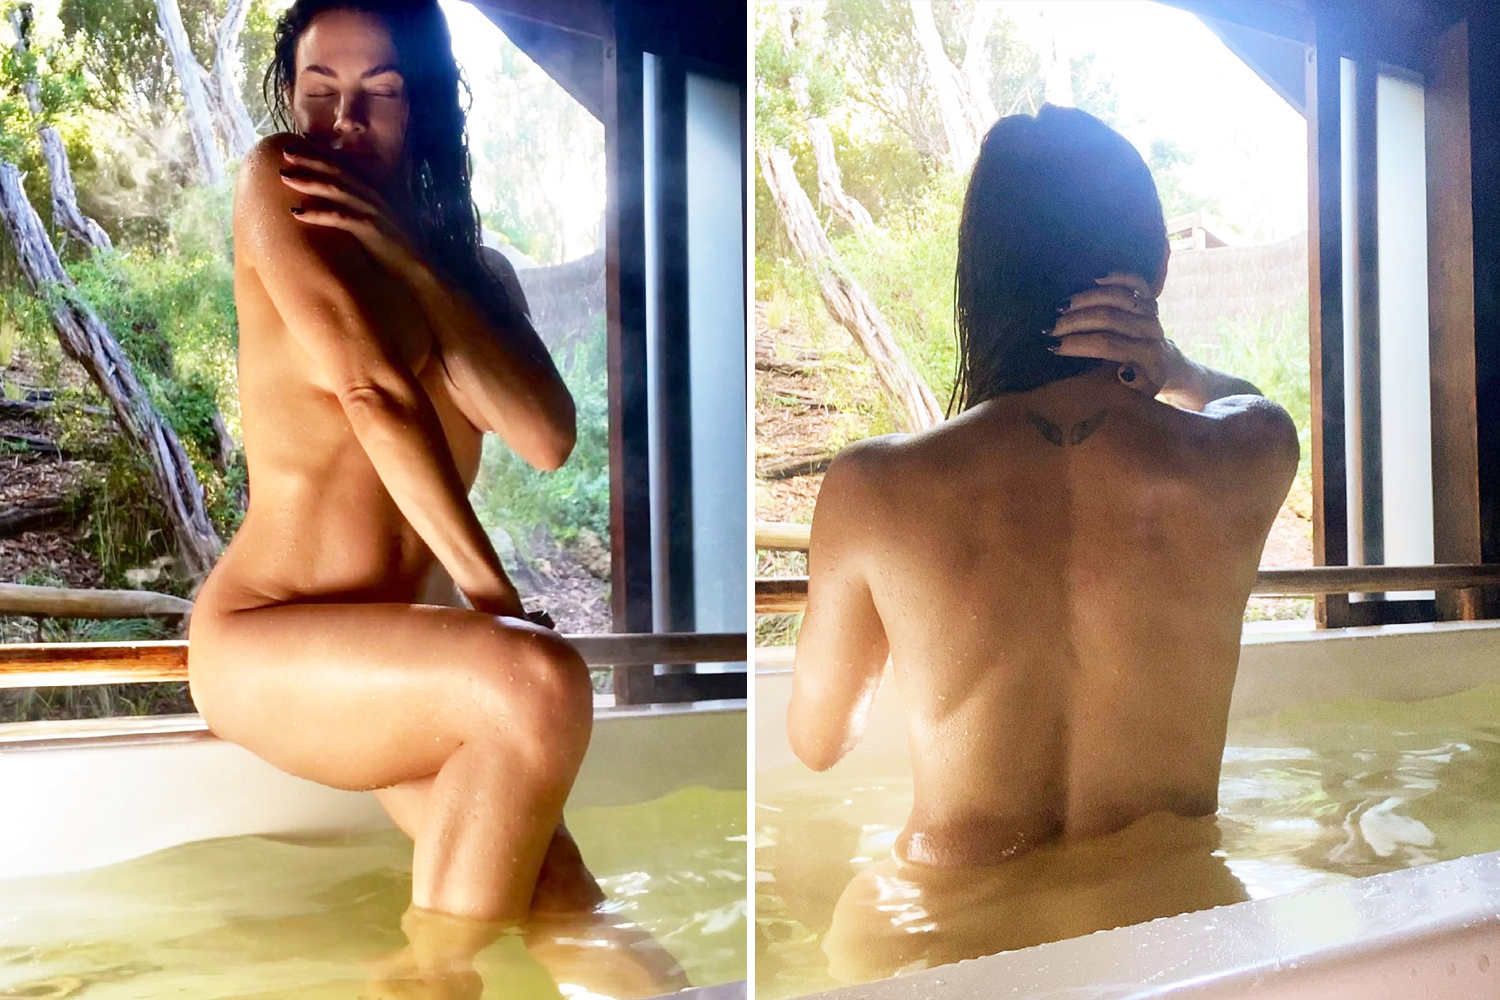 damaris wambui share jenna dewan topless photos